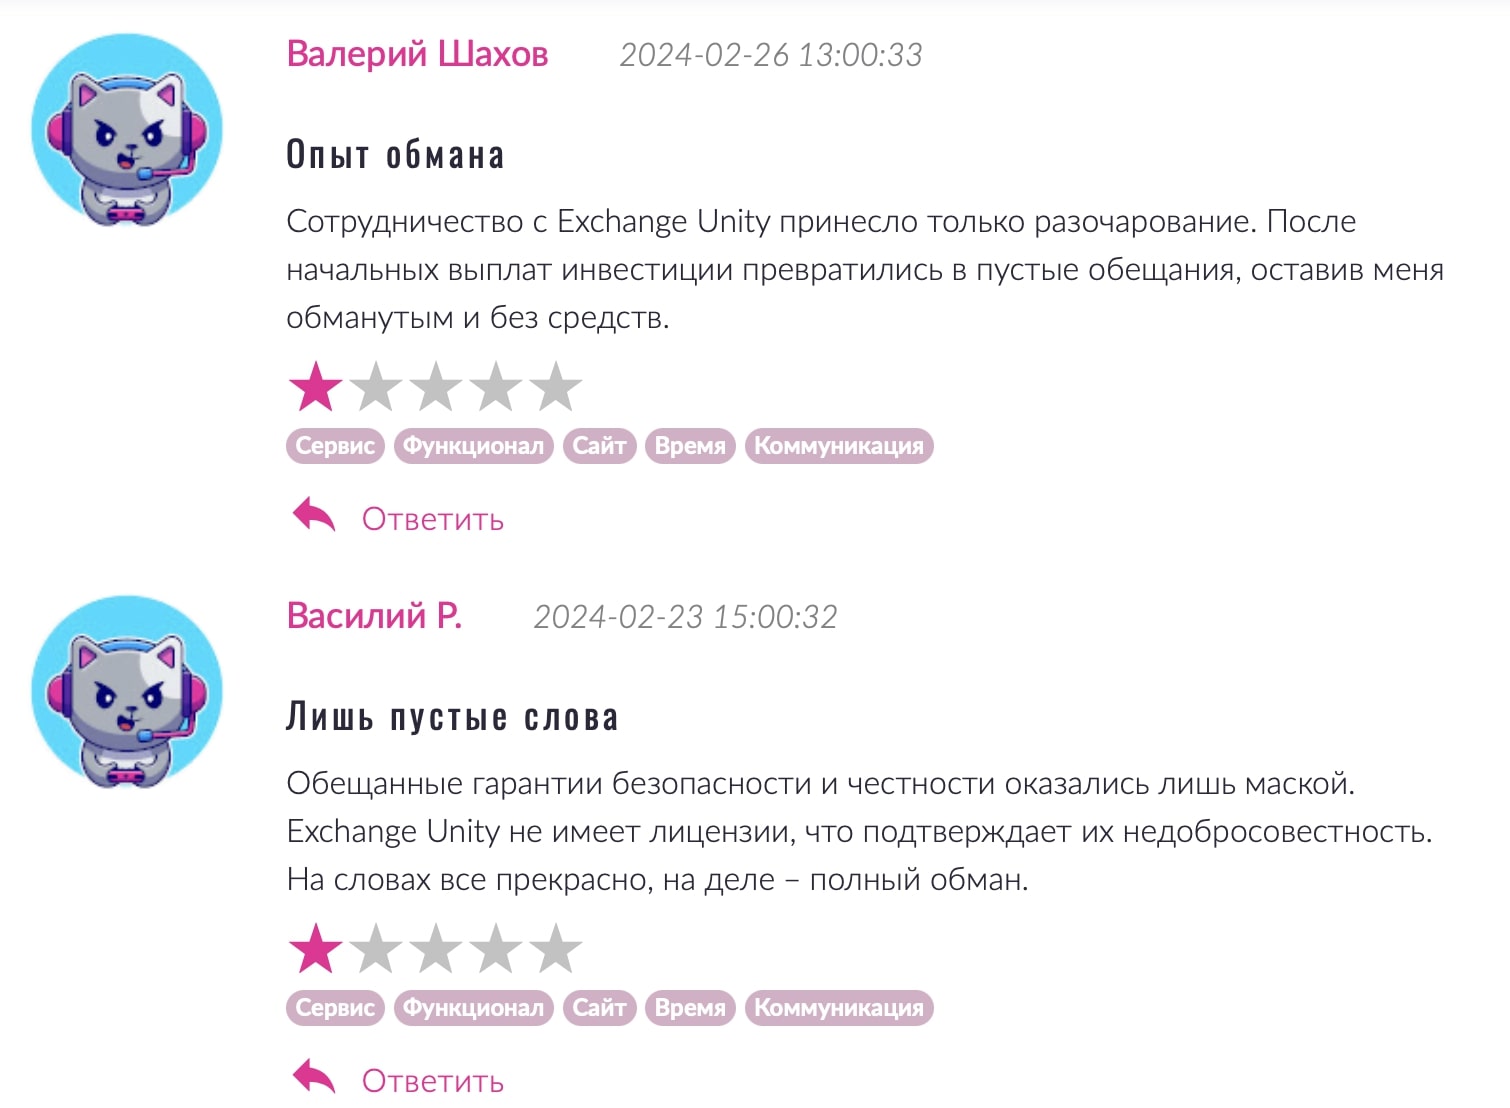 ExchangeUnity: отзывы клиентов о работе компании в 2024 году